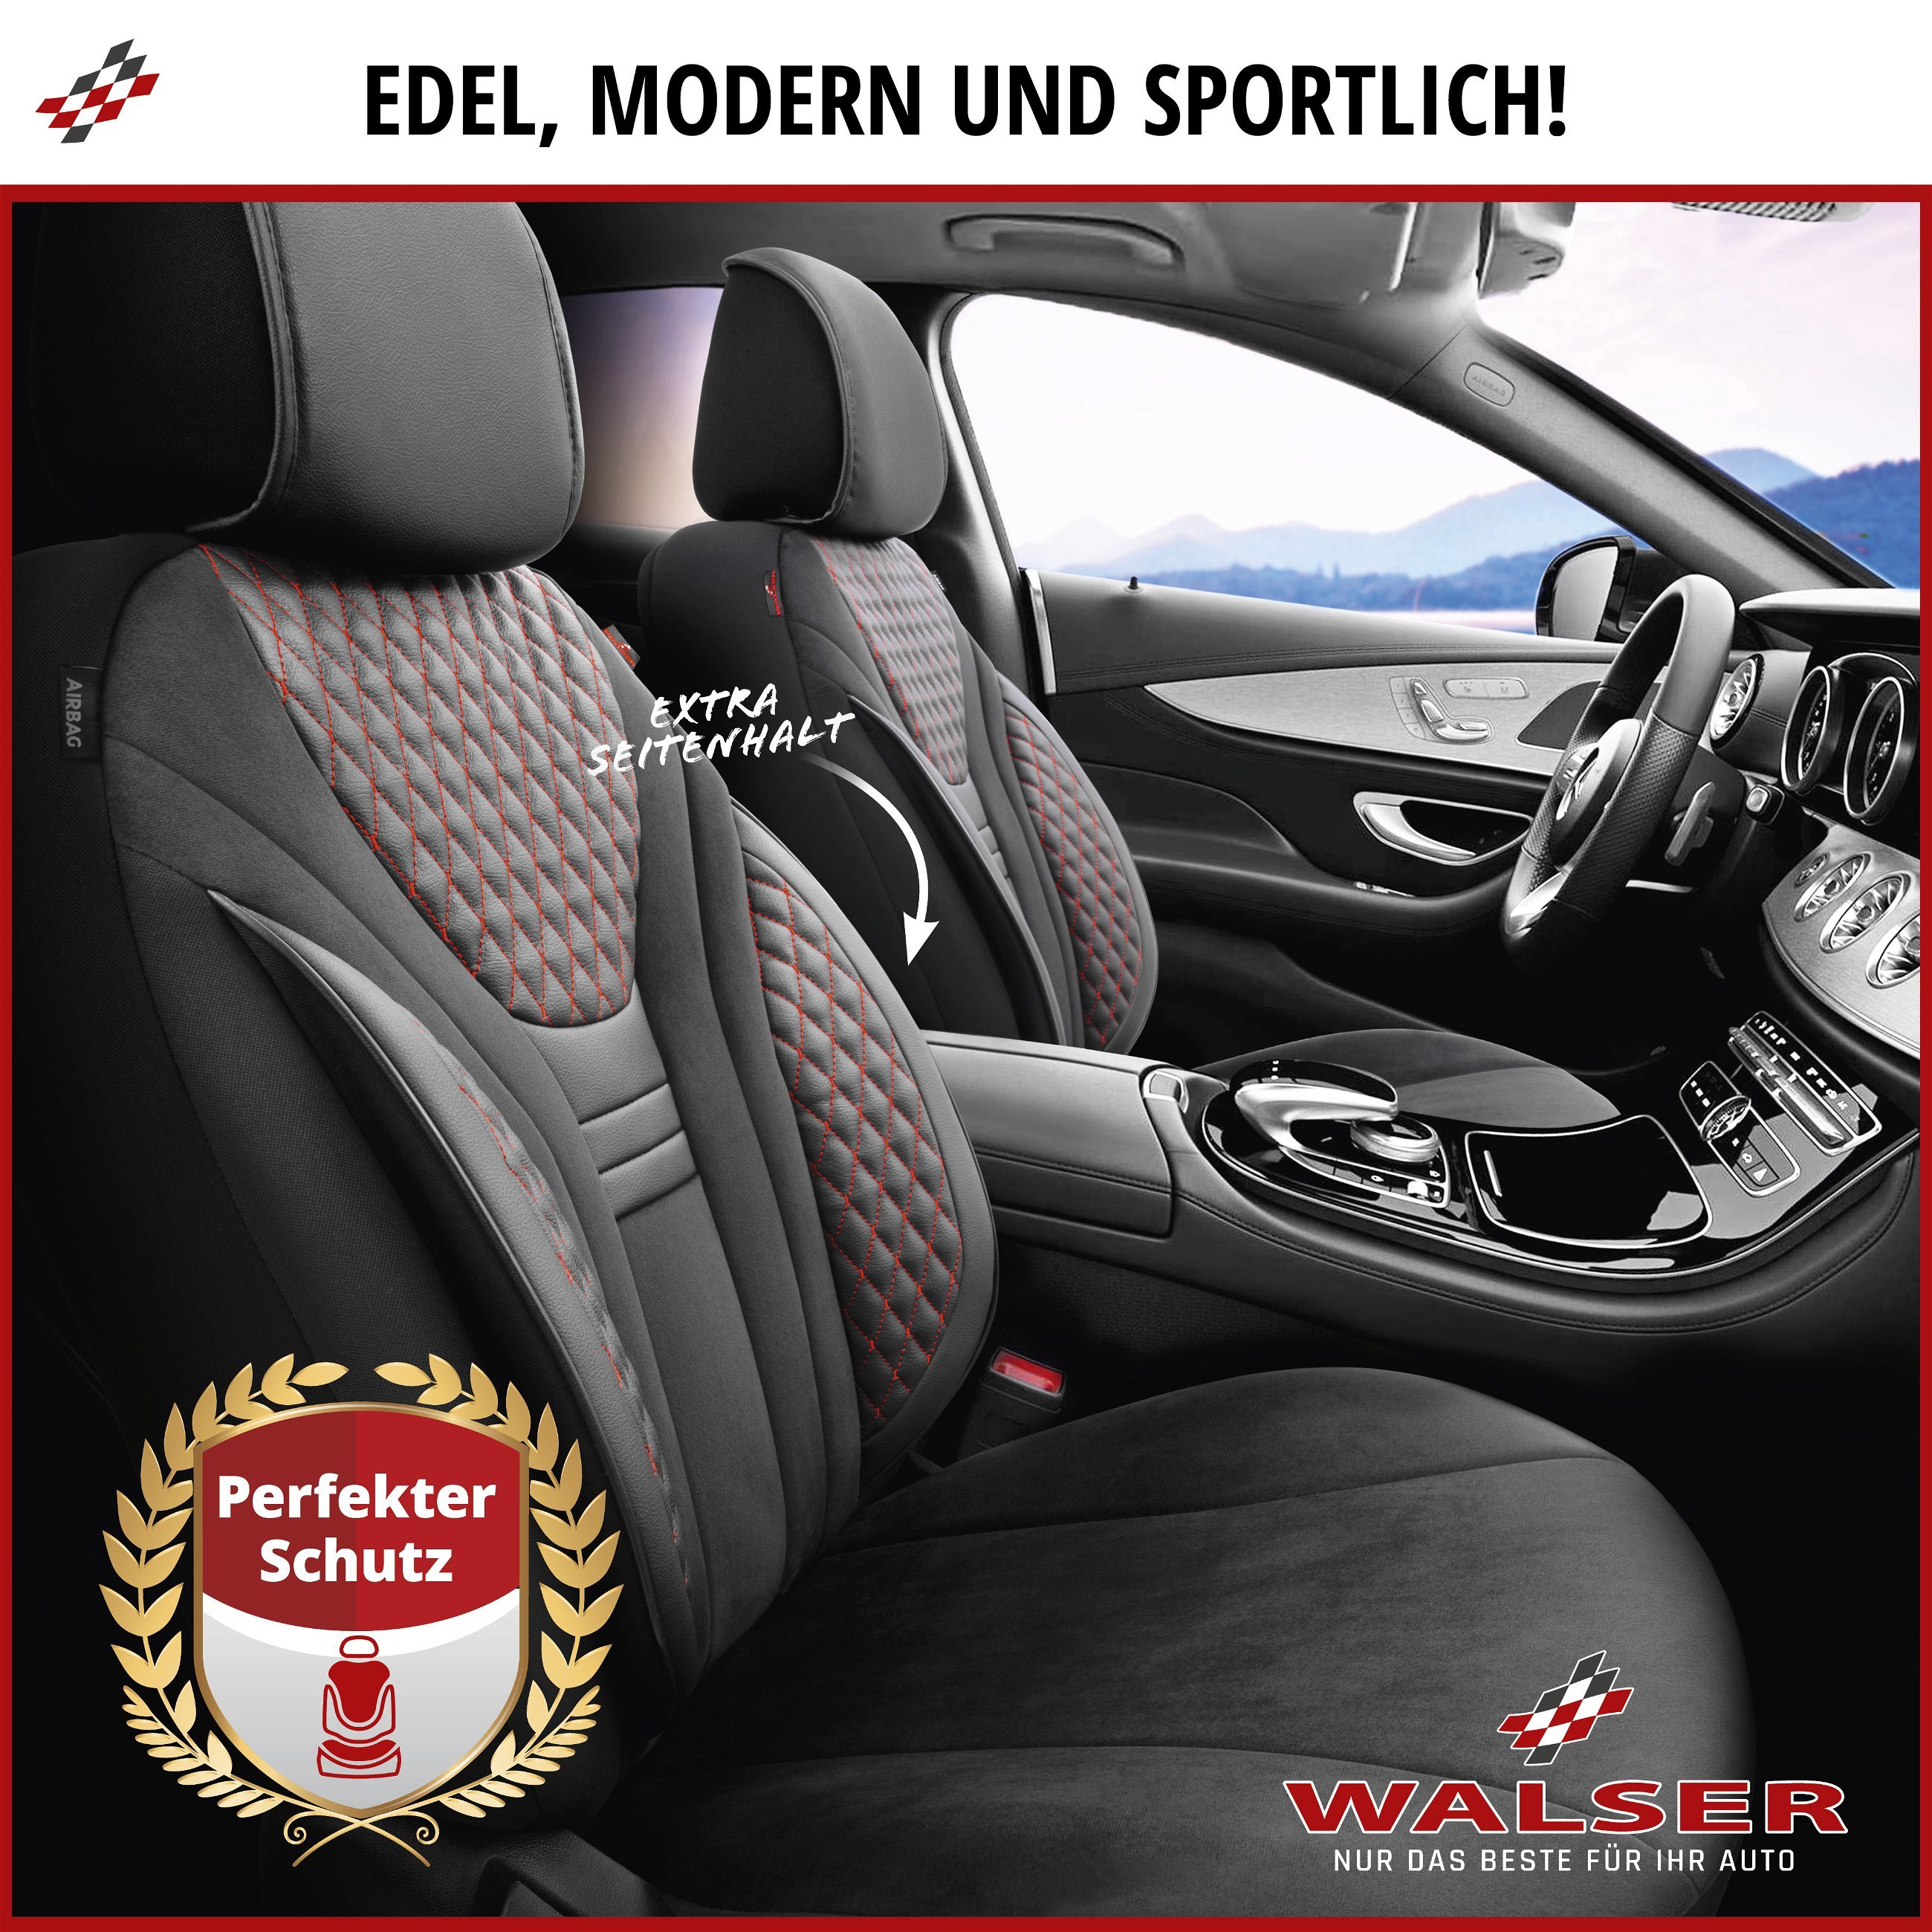 Autositzbezug ZIPP-IT Deluxe Balmoral, PKW-Schonbezüge für 2 Vordersitze mit Reißverschluss-System schwarz/rot